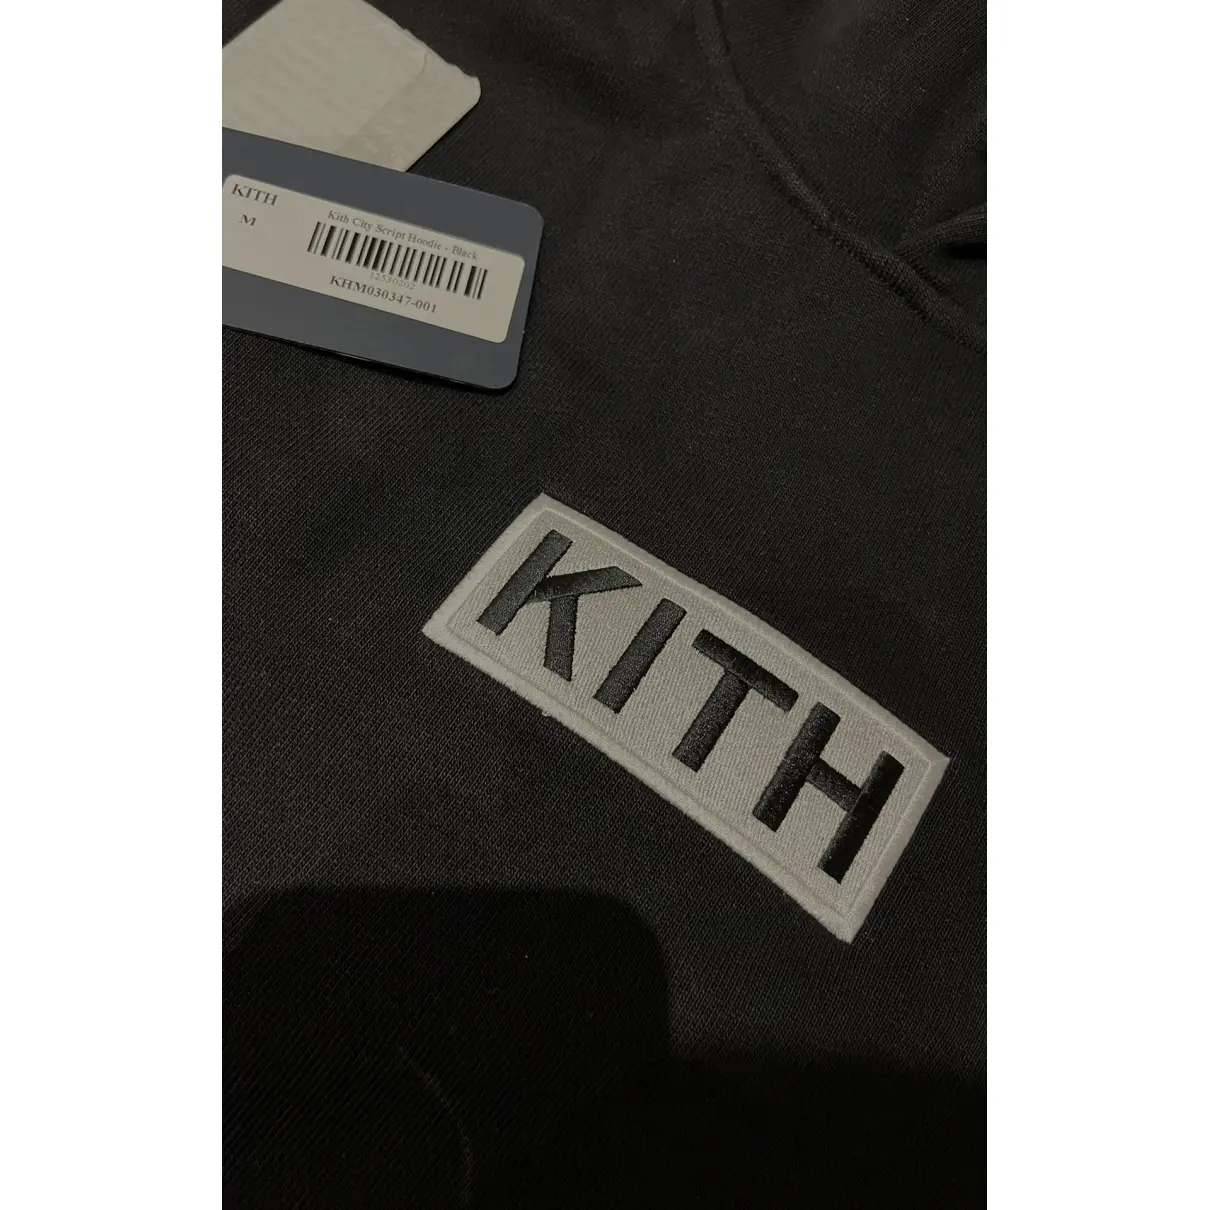 Buy Kith Sweatshirt online